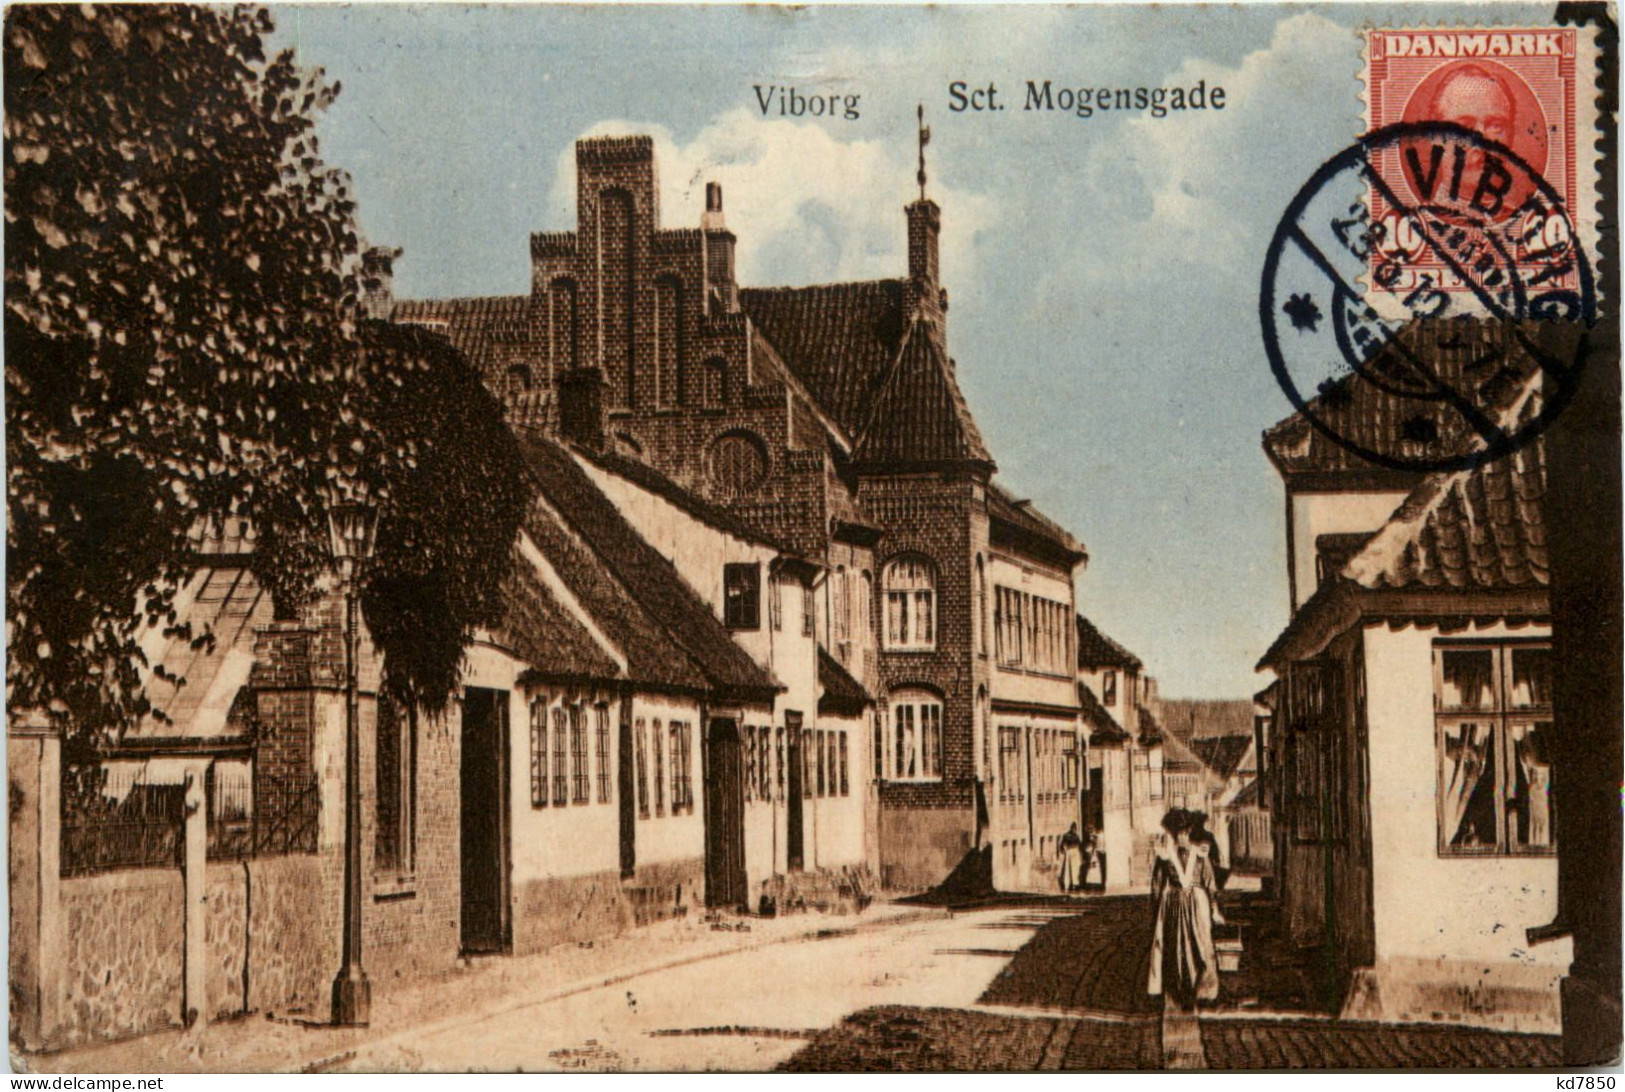 Viborg - Sct. Mogensgade - Denmark